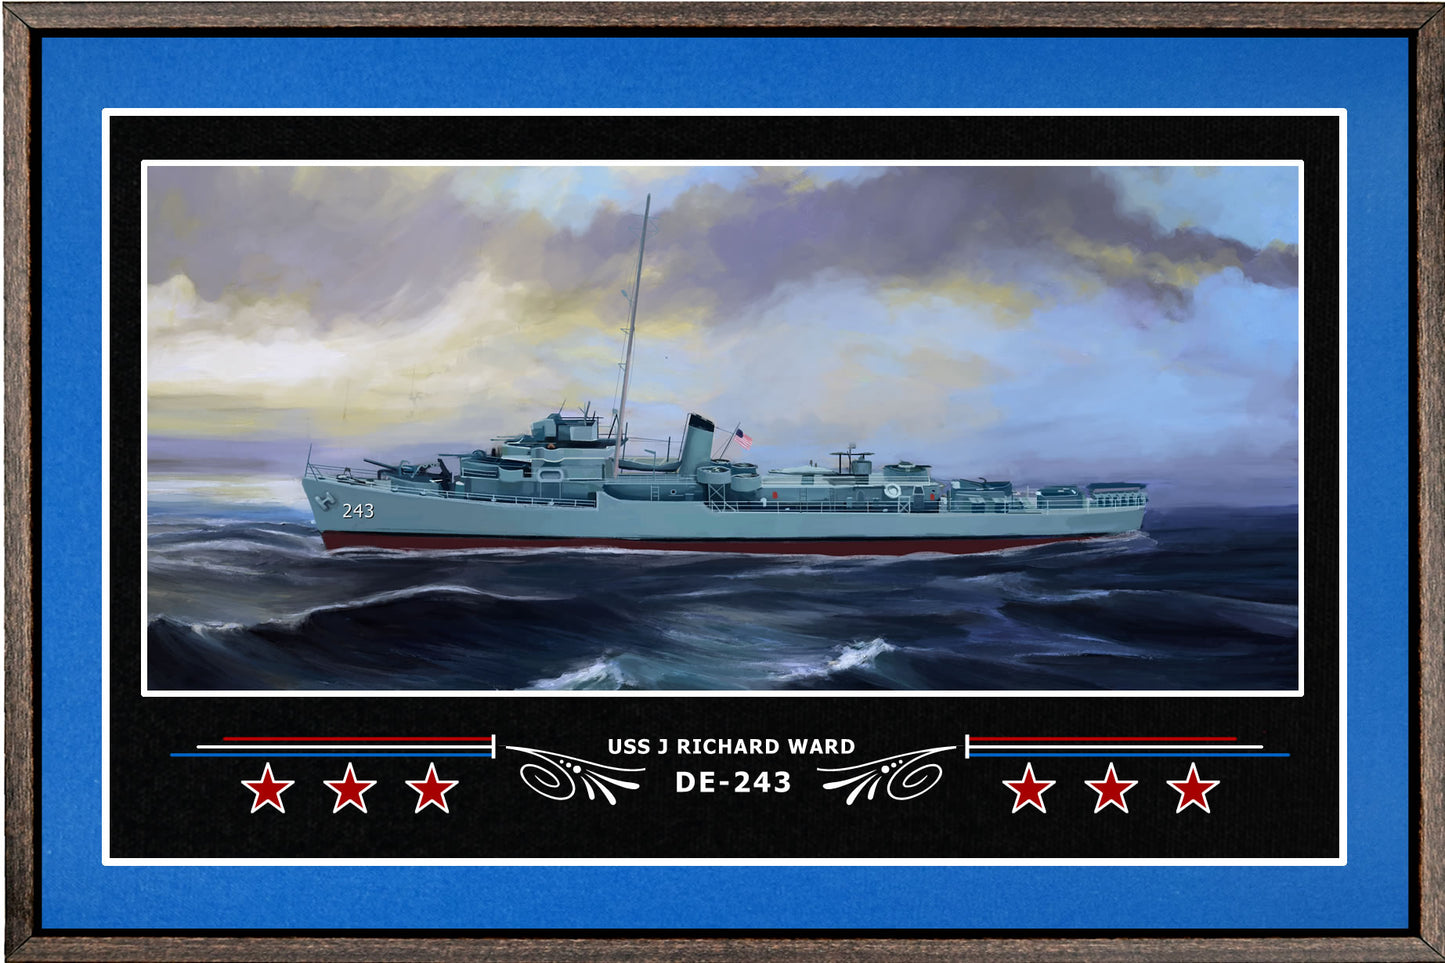 USS J RICHARD WARD DE 243 BOX FRAMED CANVAS ART BLUE